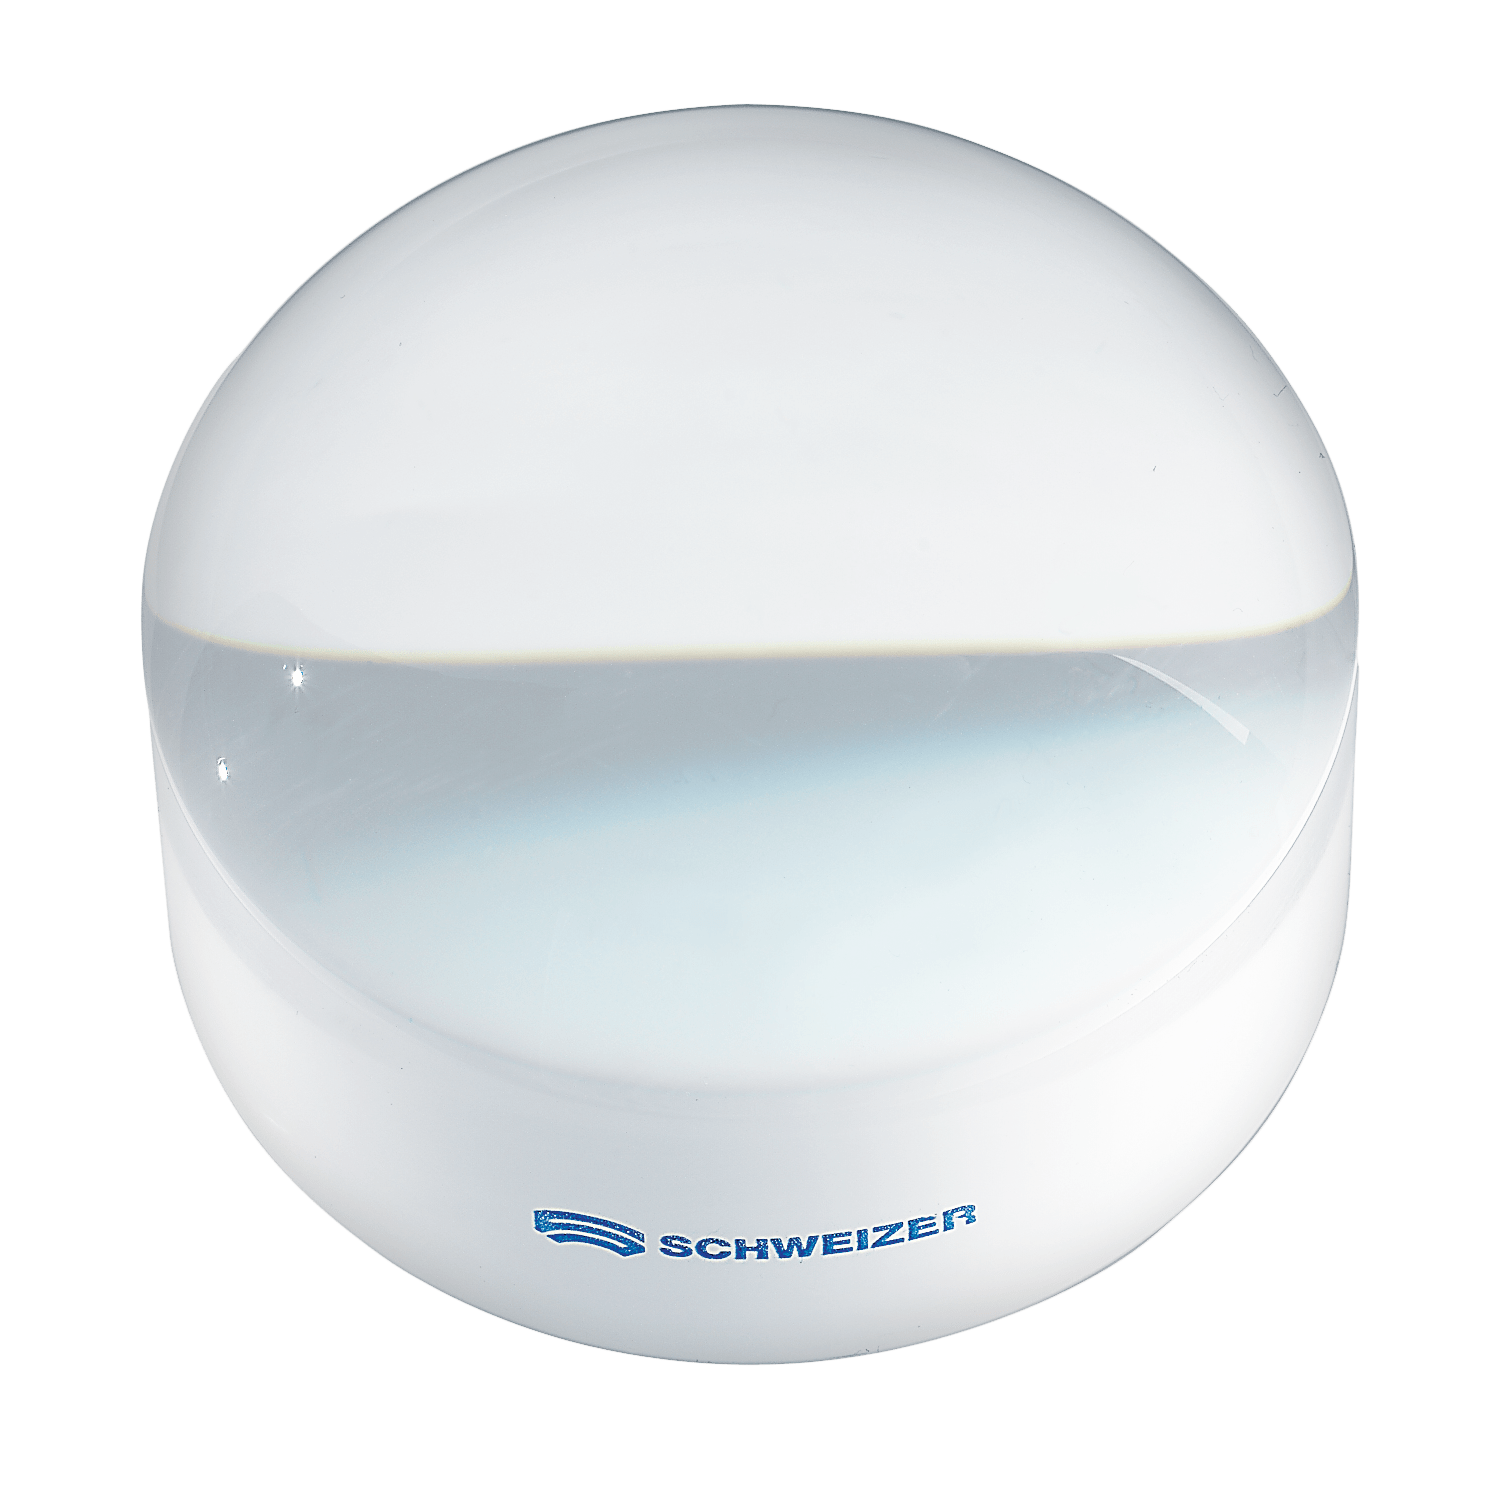 Good-Lite SCHWEIZER Bright Field Dome Magnifier